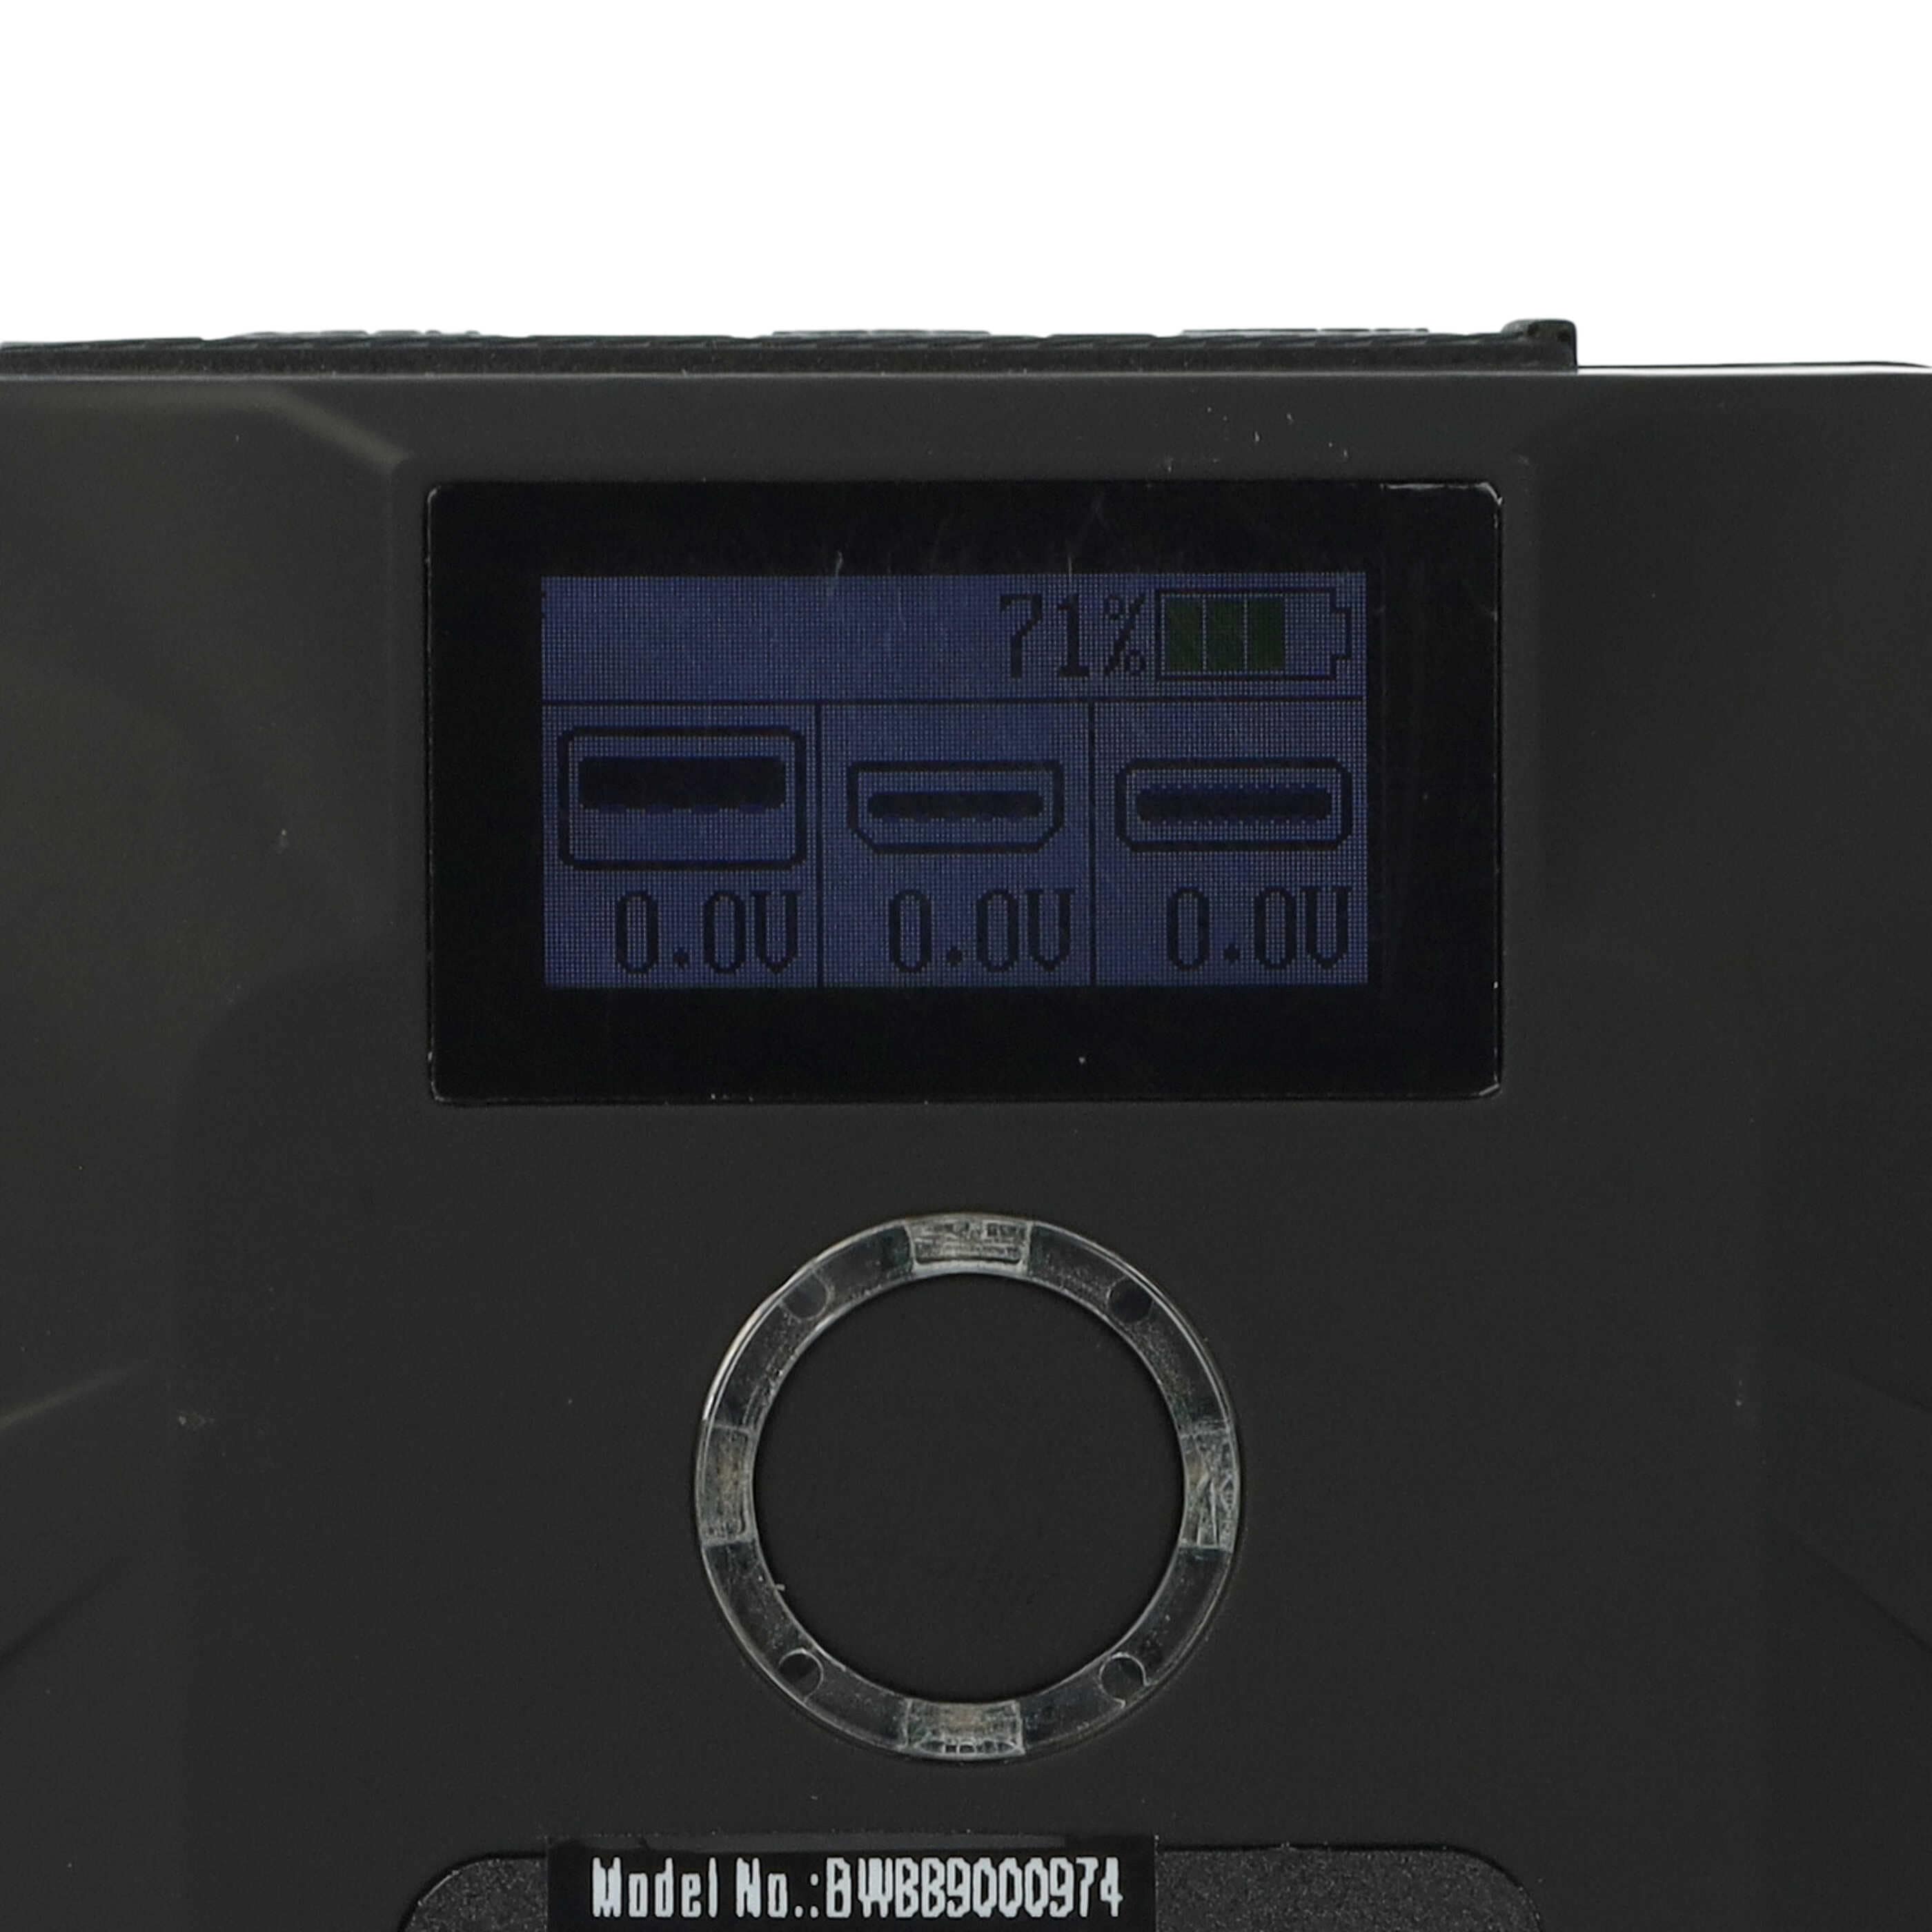 Kamera-Akku als Ersatz für Sony BP-190S, BP-150WS, BP-130L, BP-150W, BP-140A - 6700mAh 14,8V Li-Ion mit USB